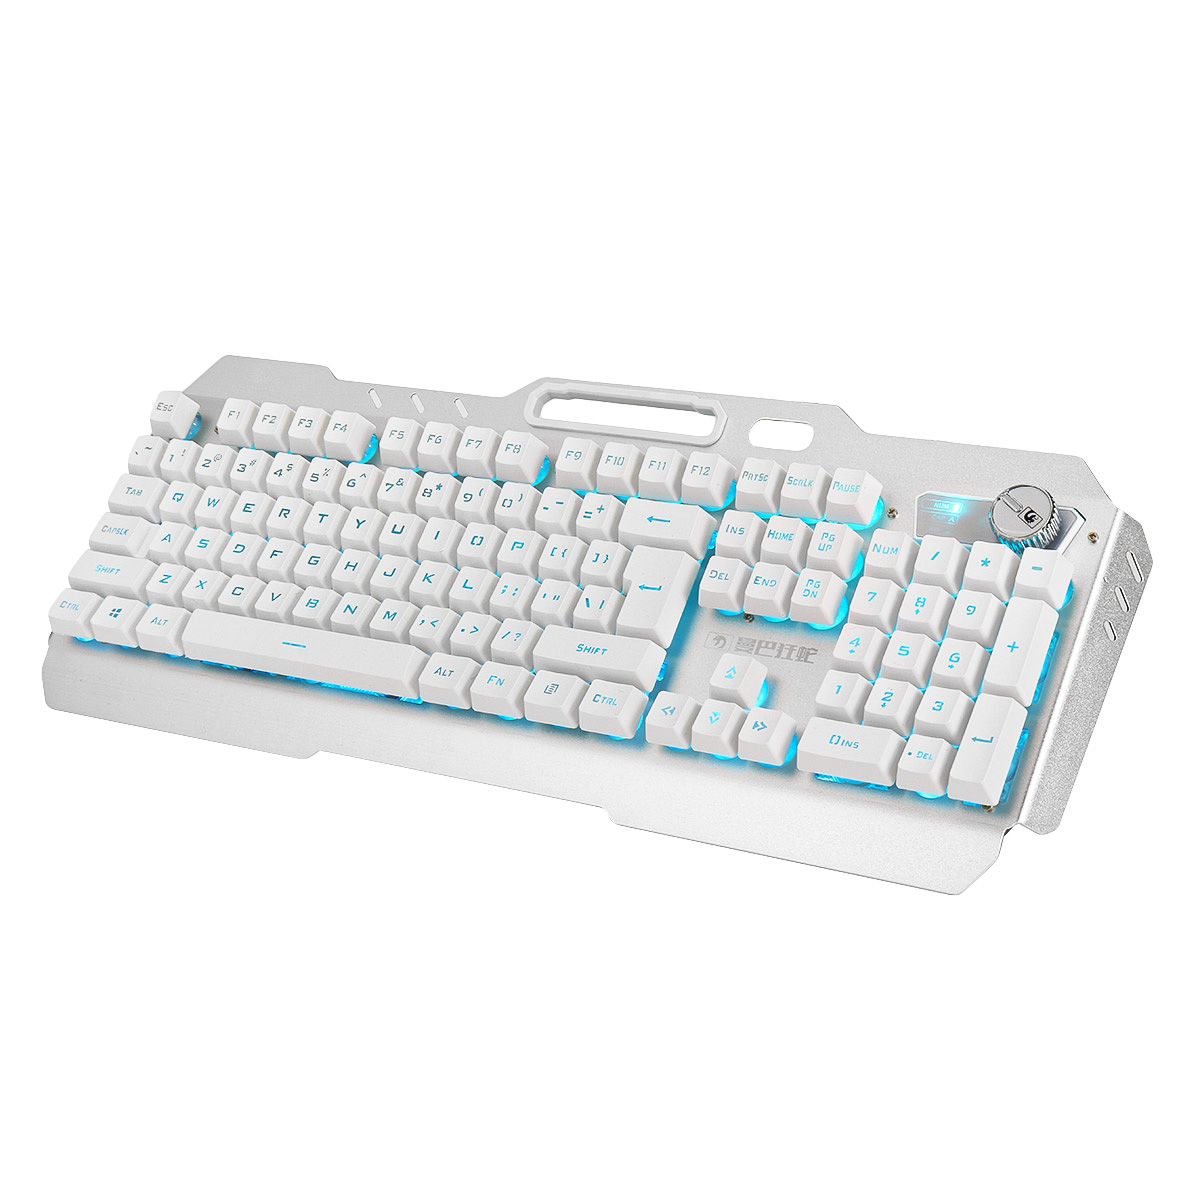 Wired-104-Keys-Keyboard--Mouse-Set-Ice-Blue-White-Backlit-Multifunction-Knob-Gaming-Keyboard-Ergonom-1740761